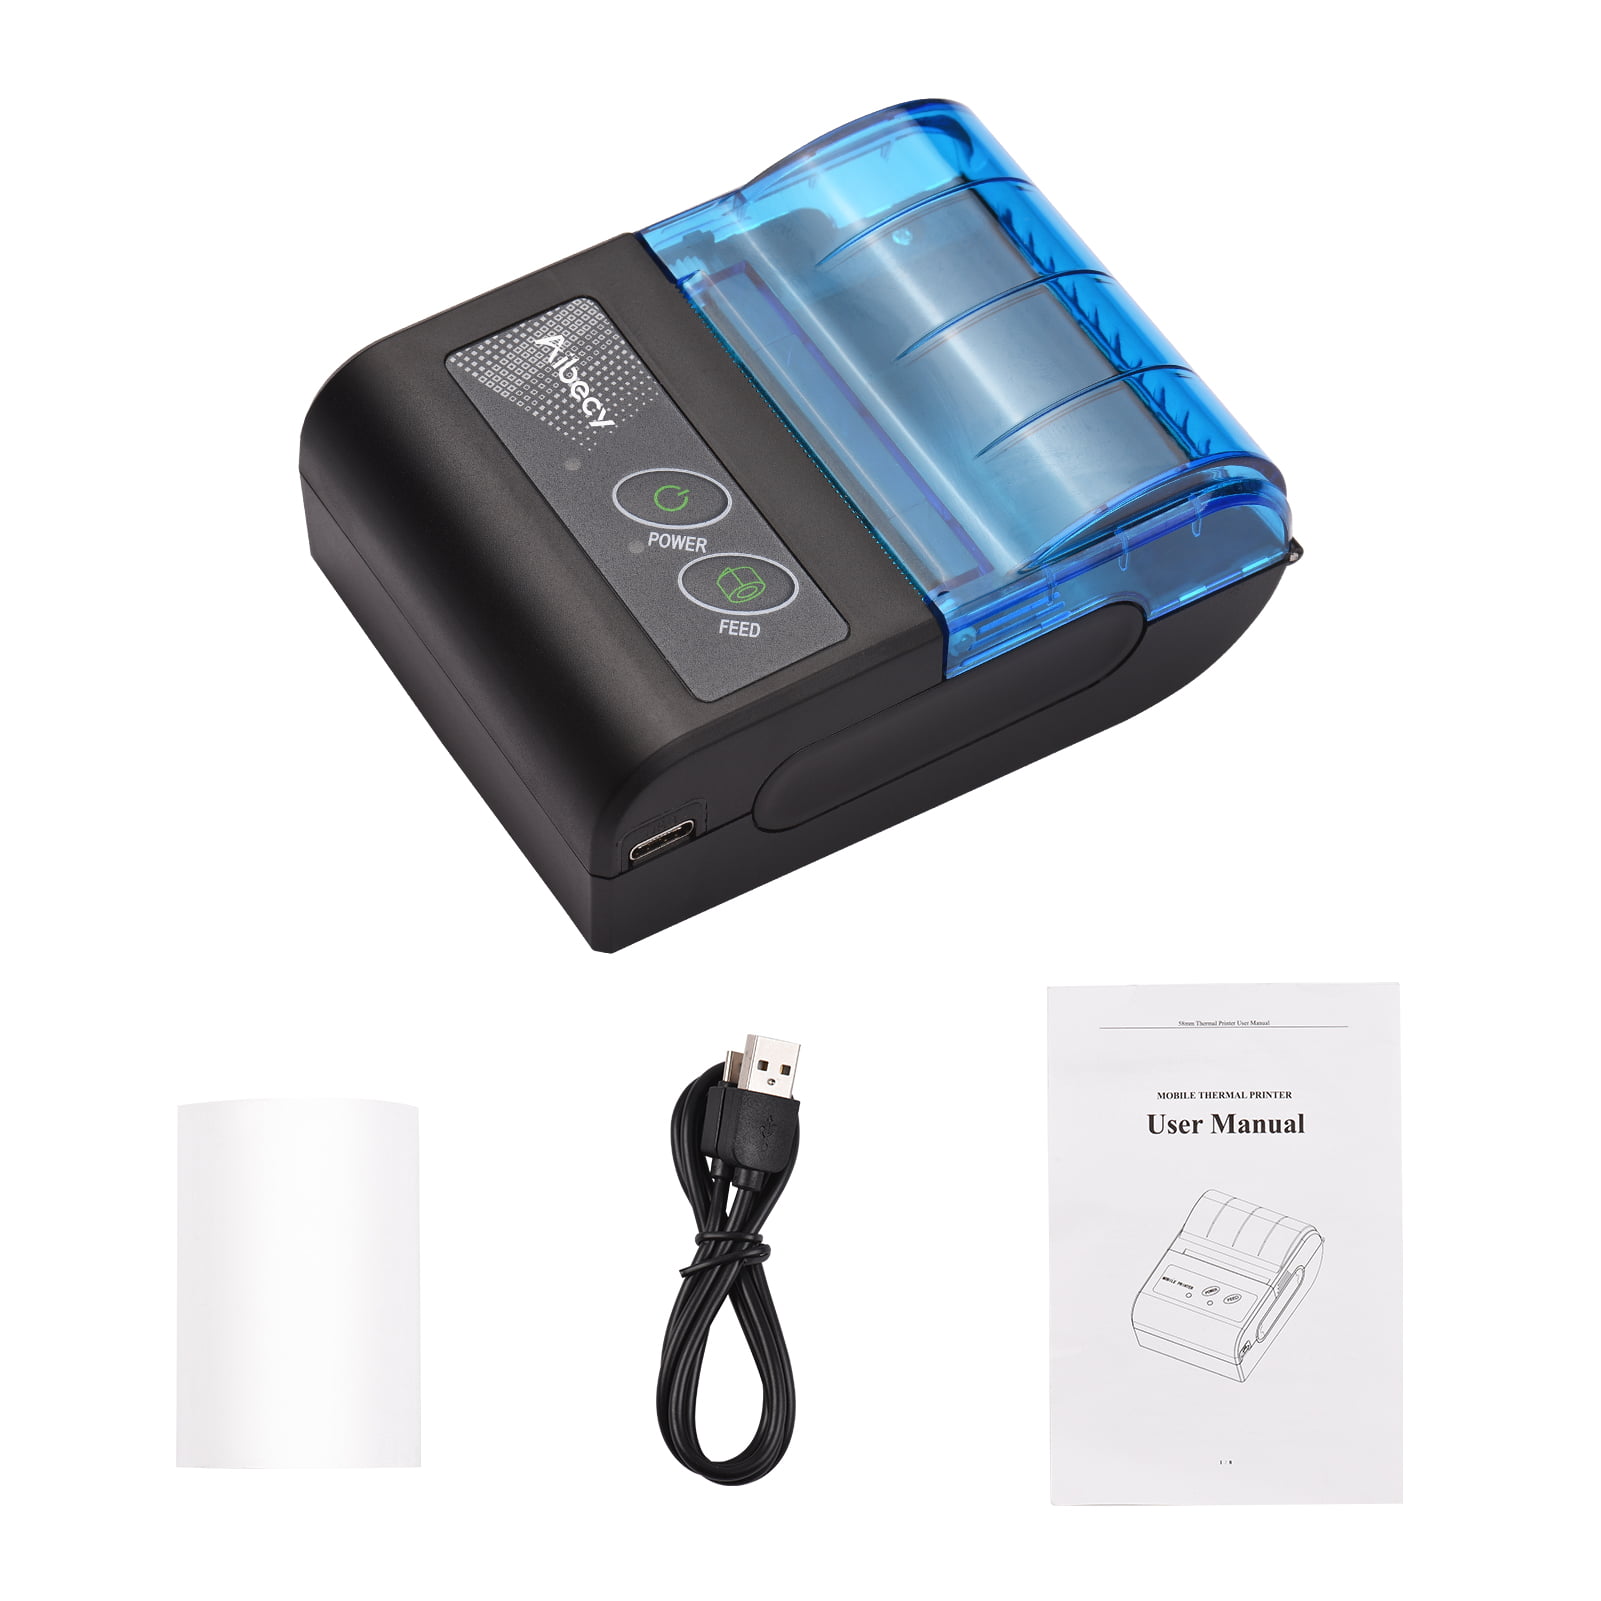 Acheter Aibecy 58mm Mini imprimante thermique Portable sans fil étiquette  reçu expédition imprimante express USB BT